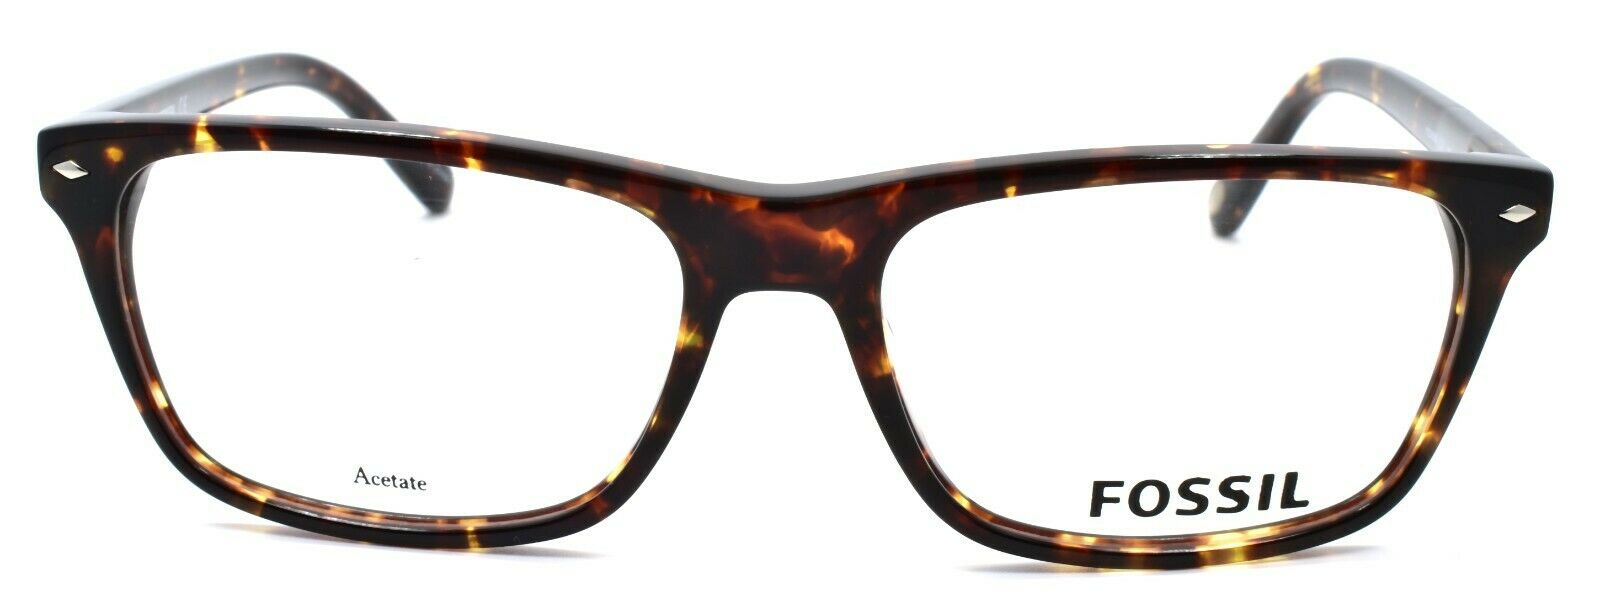 2-Fossil FOS 6086 TLF Men's Eyeglasses Frames 55-17-145 Havana Brown-762753678850-IKSpecs